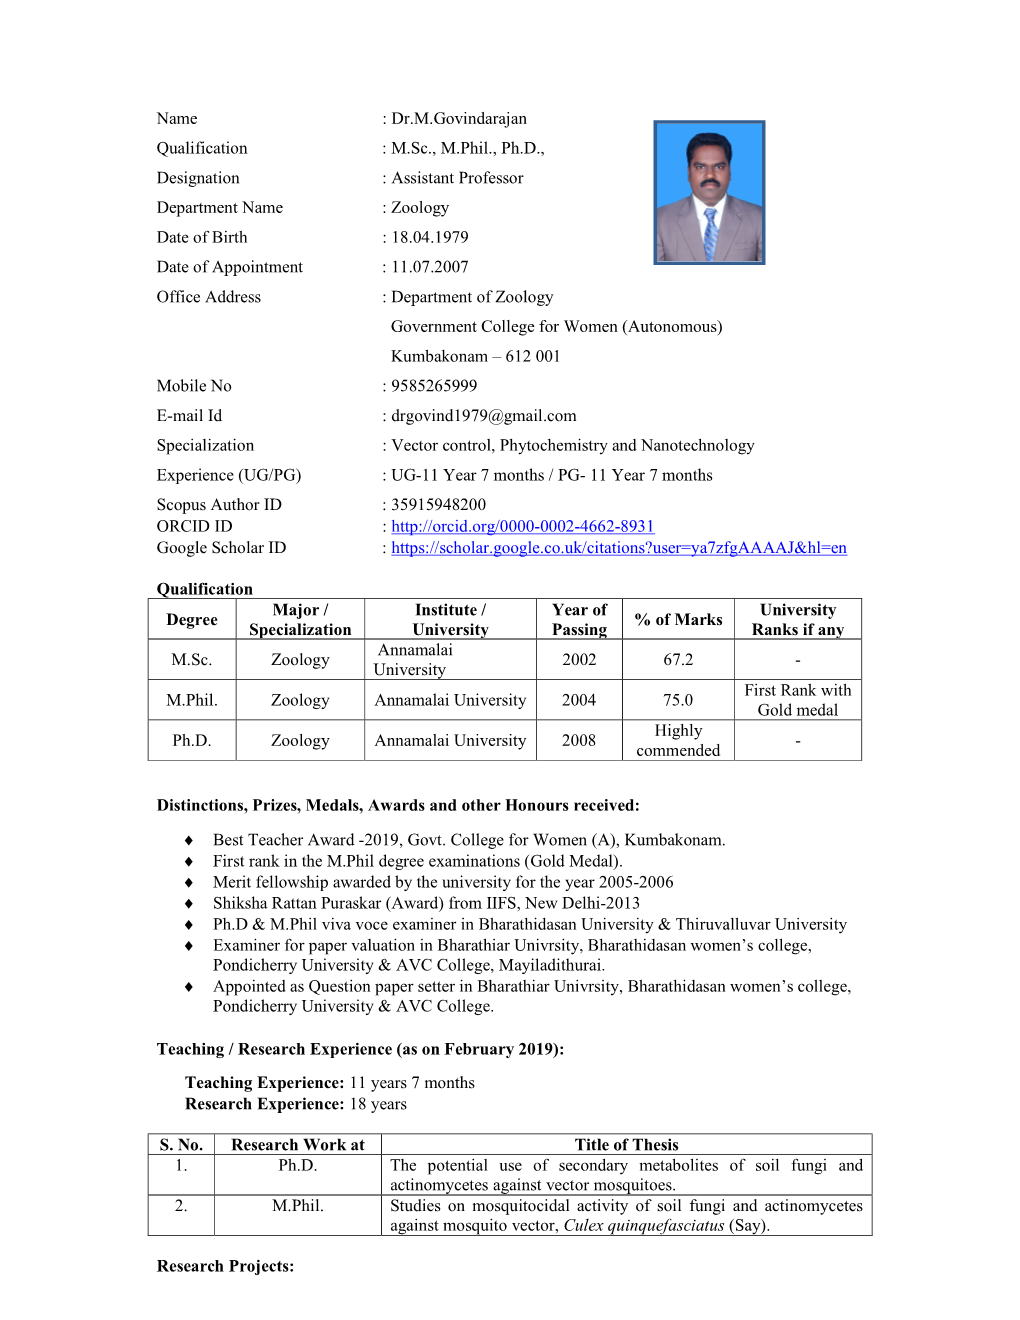 Dr.M.Govindarajan Qualification : M.Sc., M.Phil., Ph.D., Designation